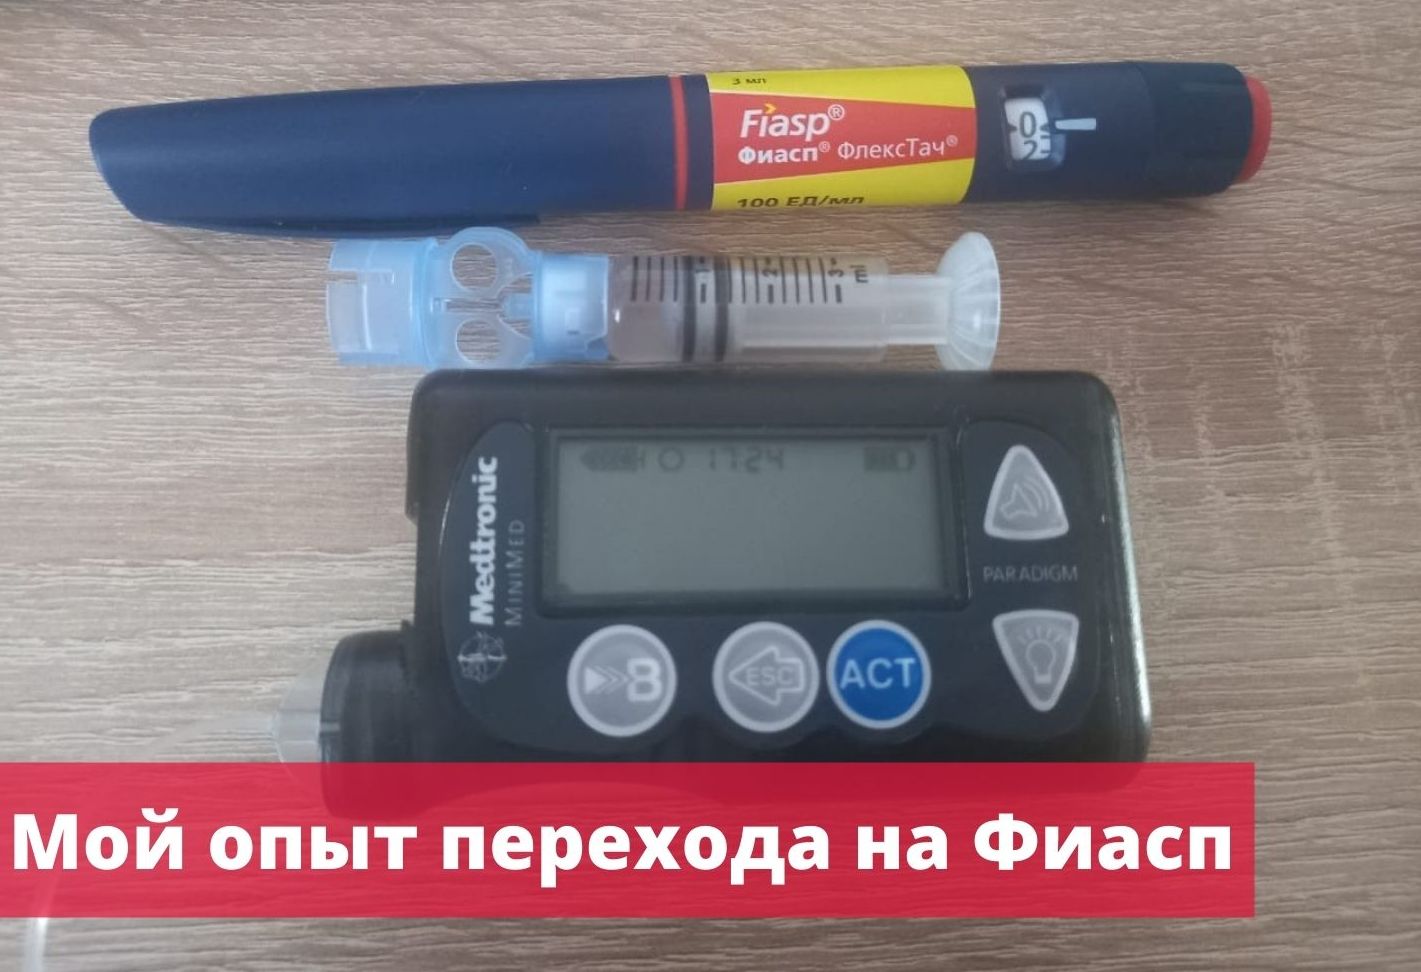 Измерение глюкометром сахара в крови Правило 15